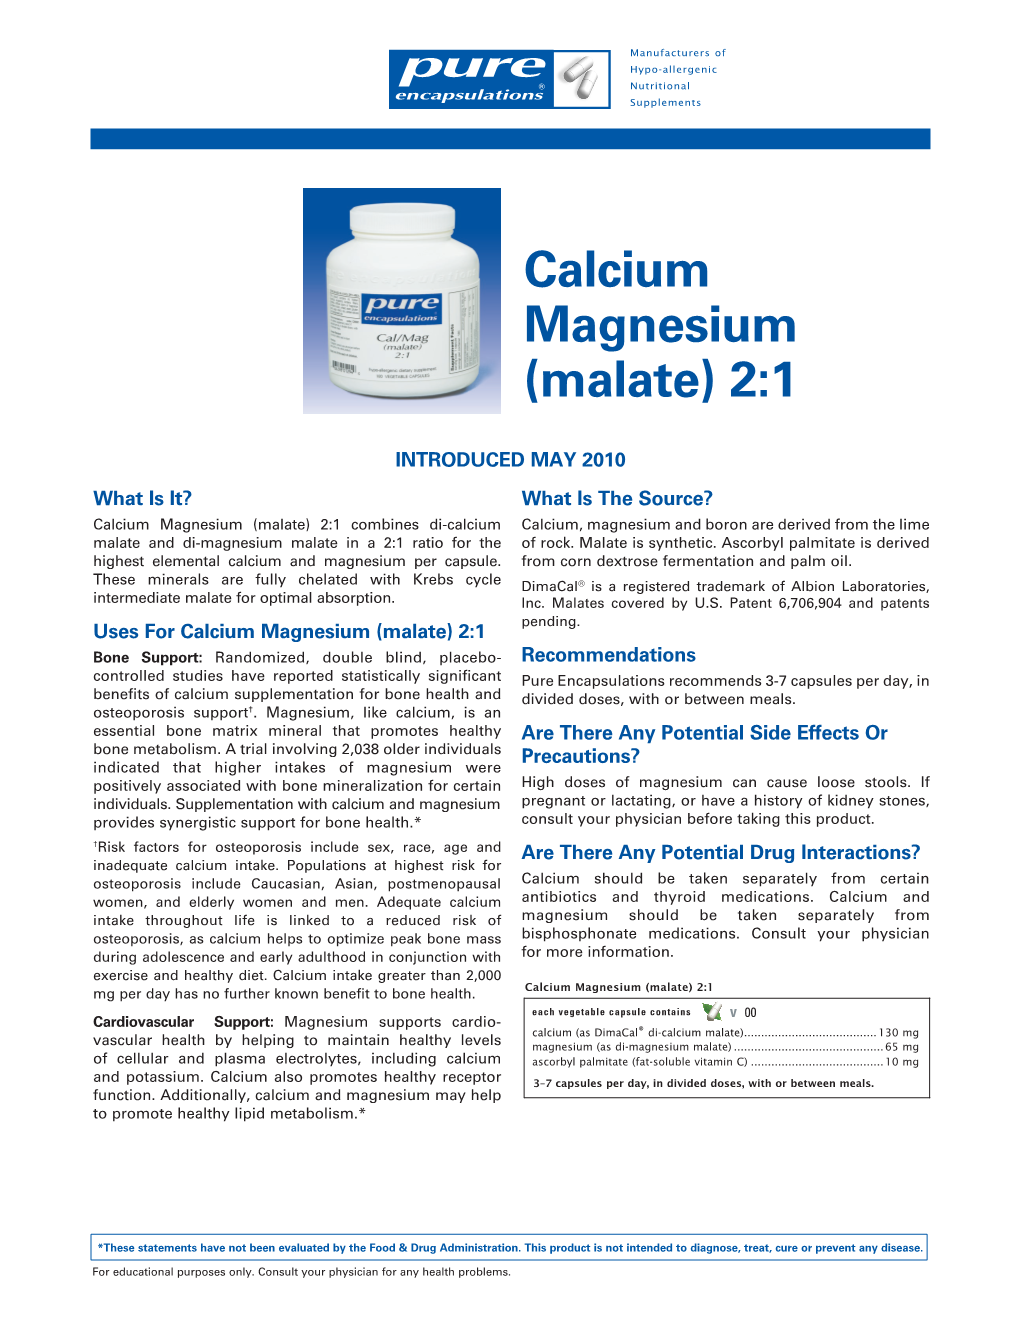 Calcium Magnesium (Malate) 2:1